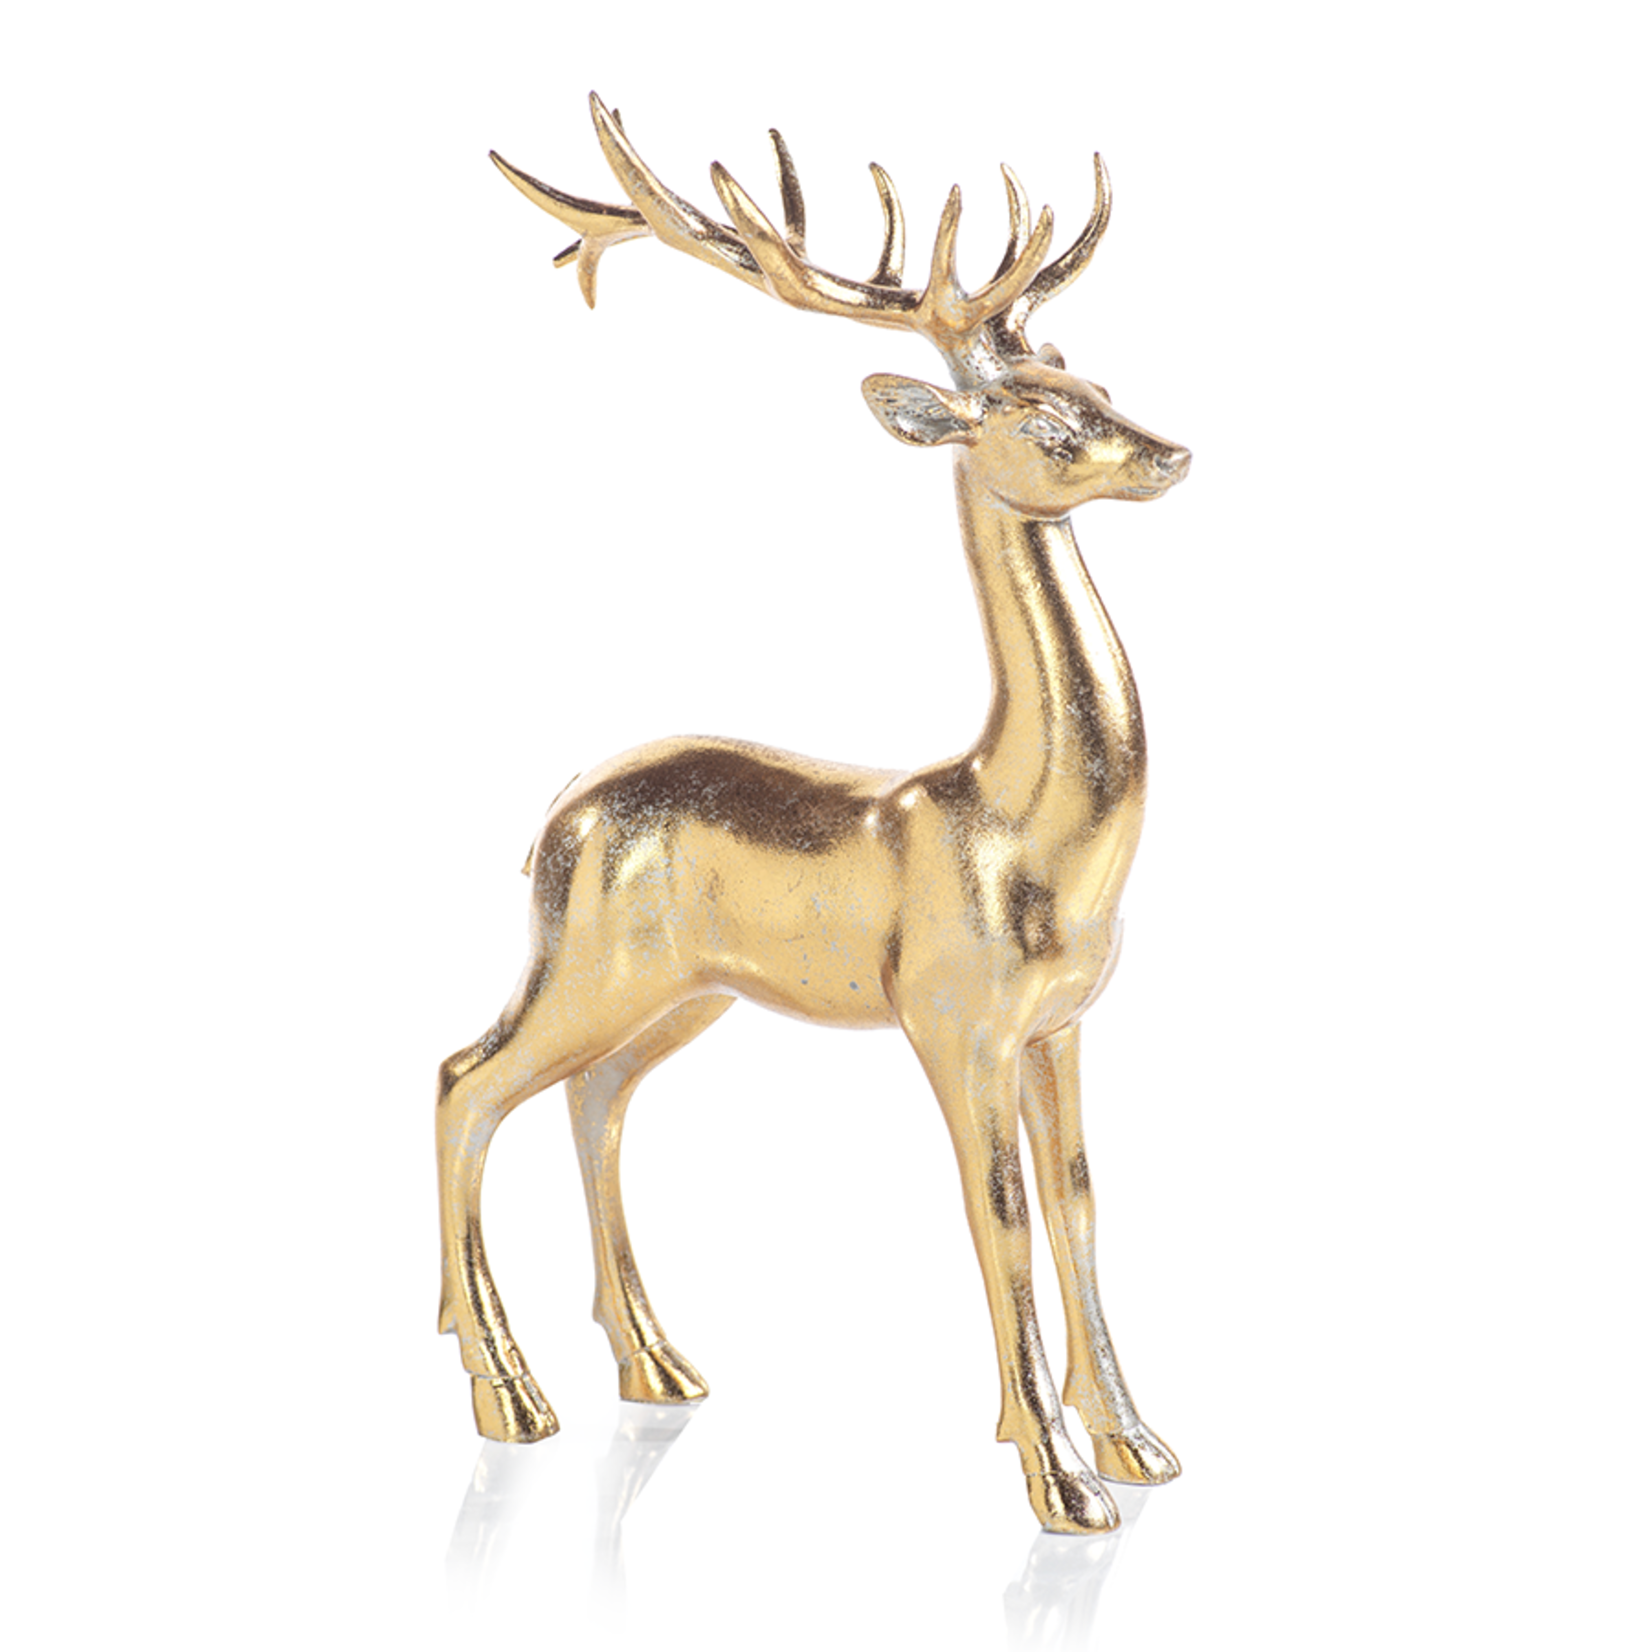 Zodax Decorative Deer